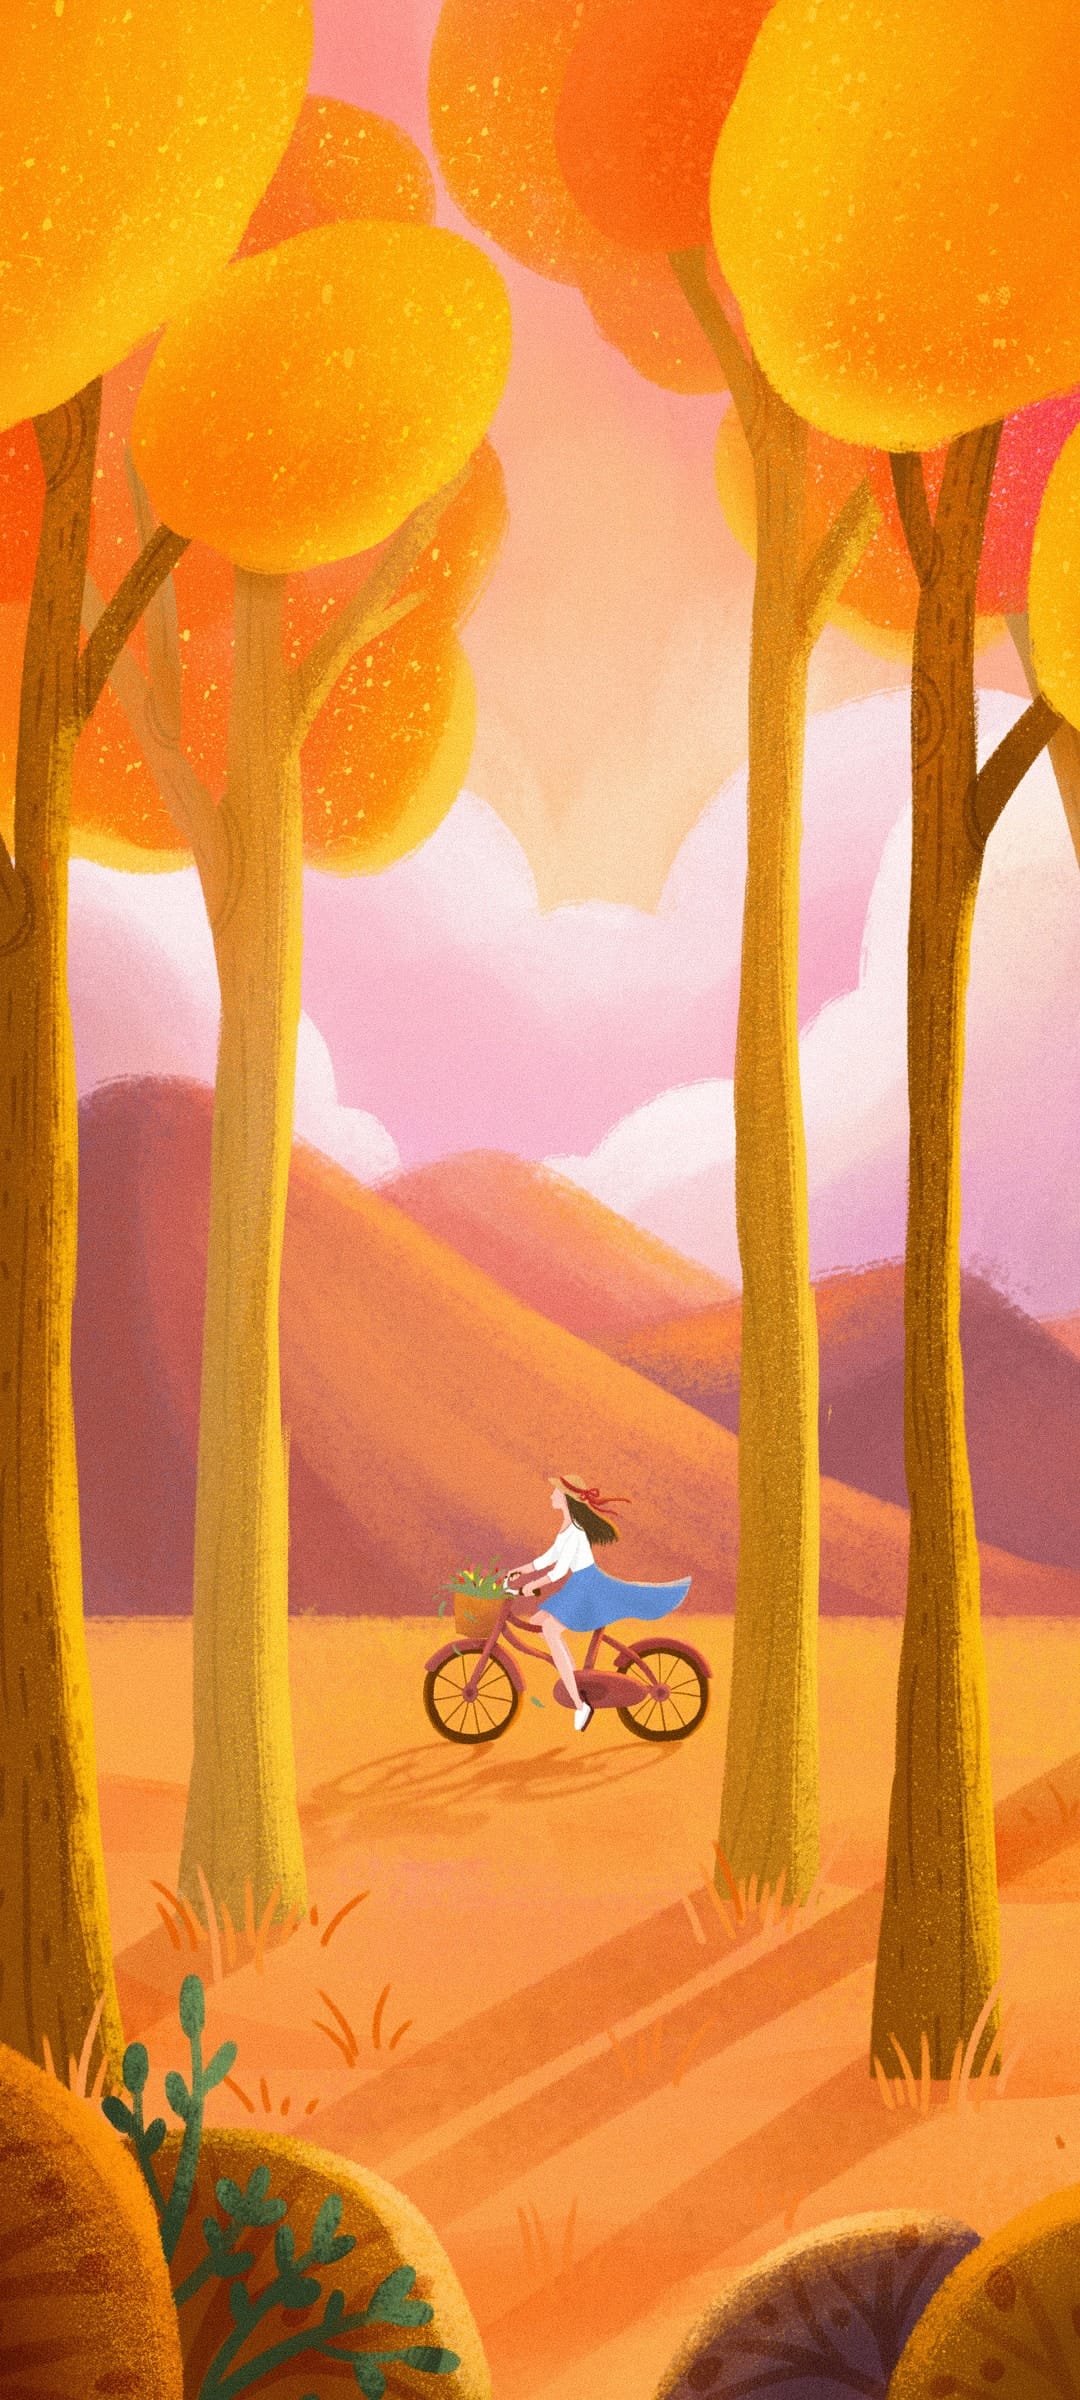 骑单车的女孩手绘风景金黄色风格壁纸